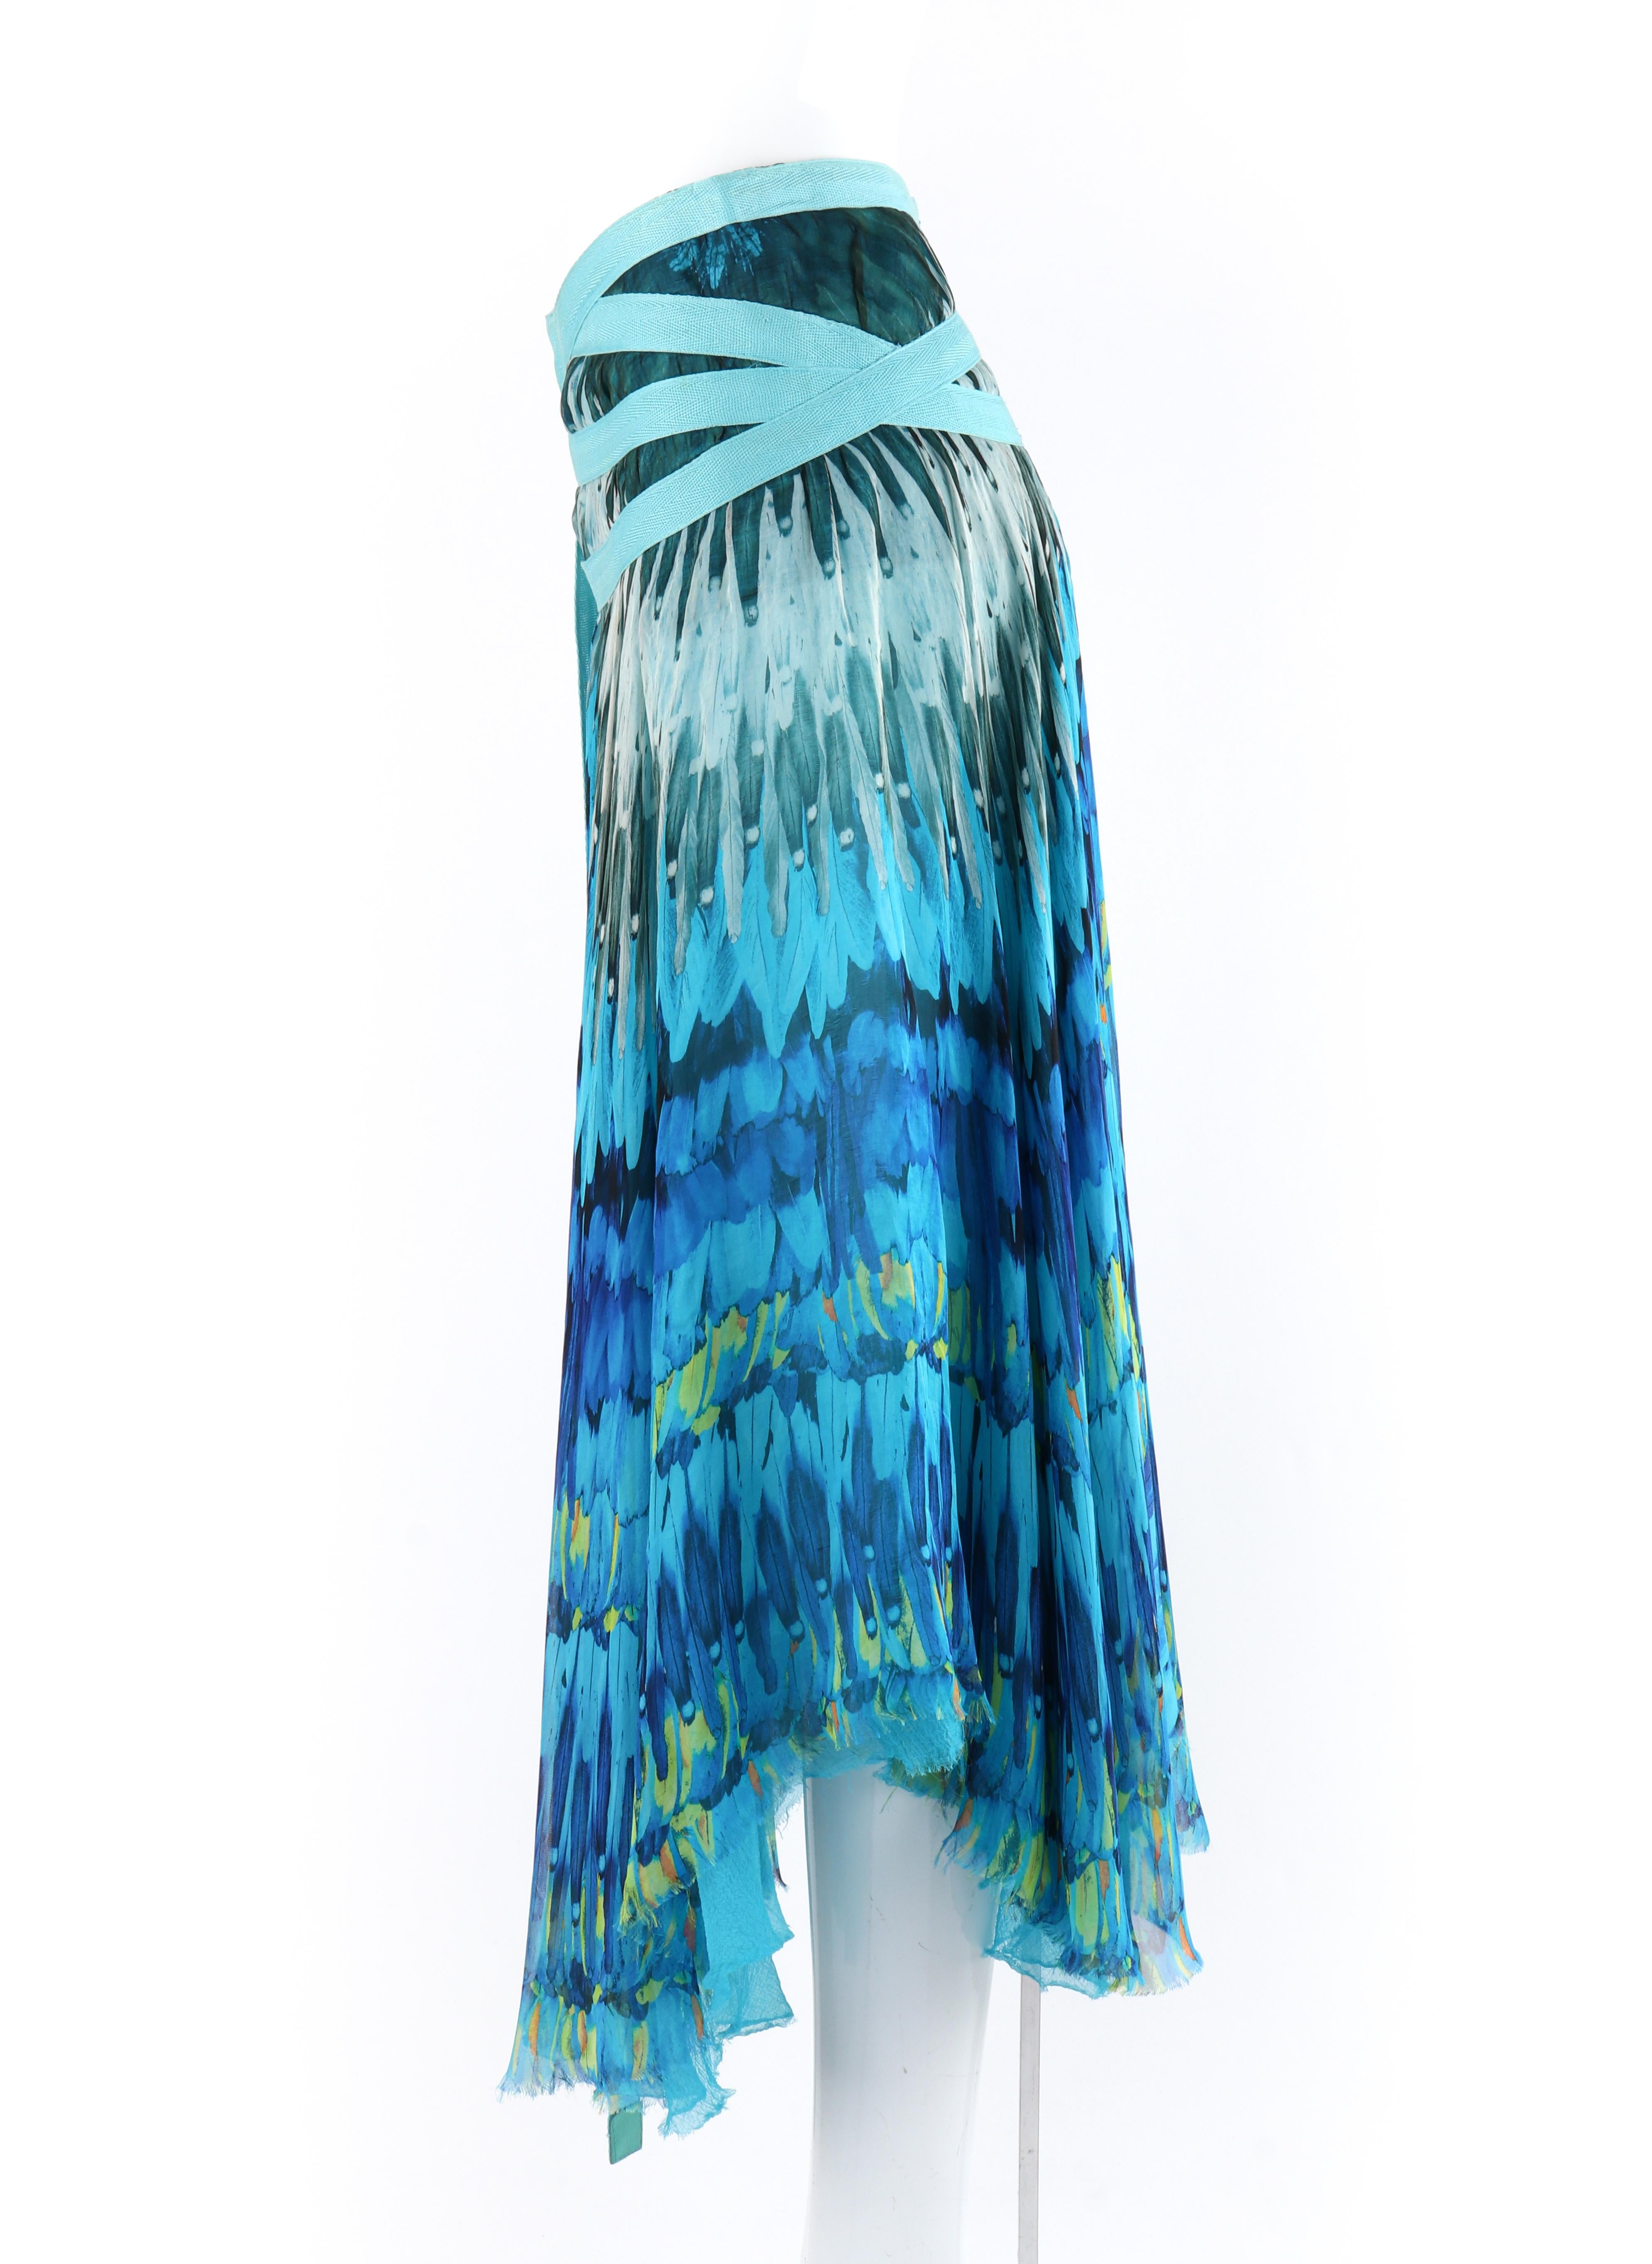 ALEXANDER McQUEEN S/S 2003 “Irere” Blue Feather Silk Handkerchief Hem Midi Skirt 3